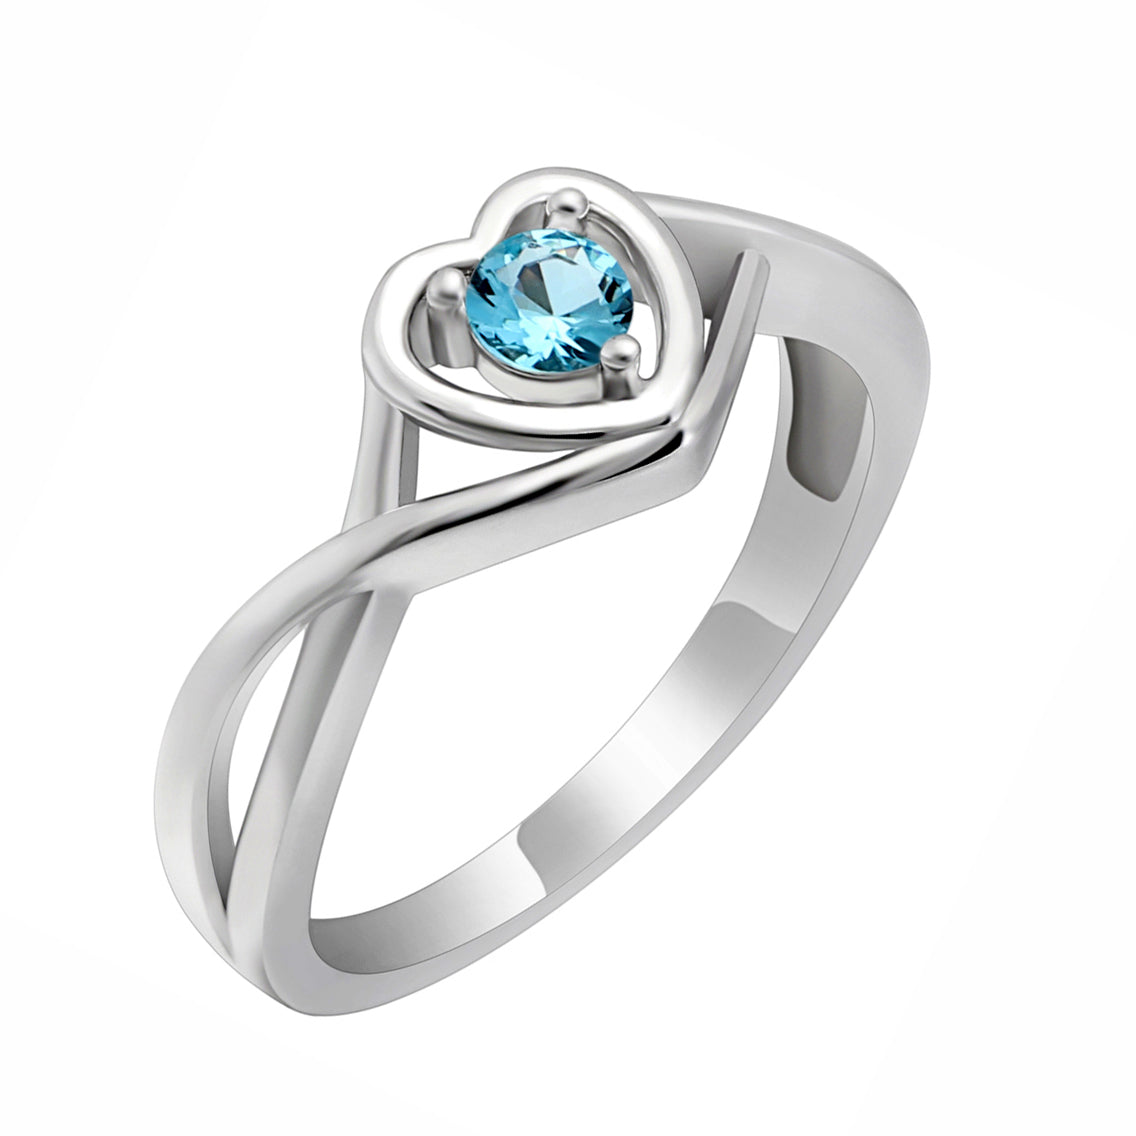 Christine Promise Ring Heart Engagement Women Silver Cz Ginger Lyne - March Light Blue,8